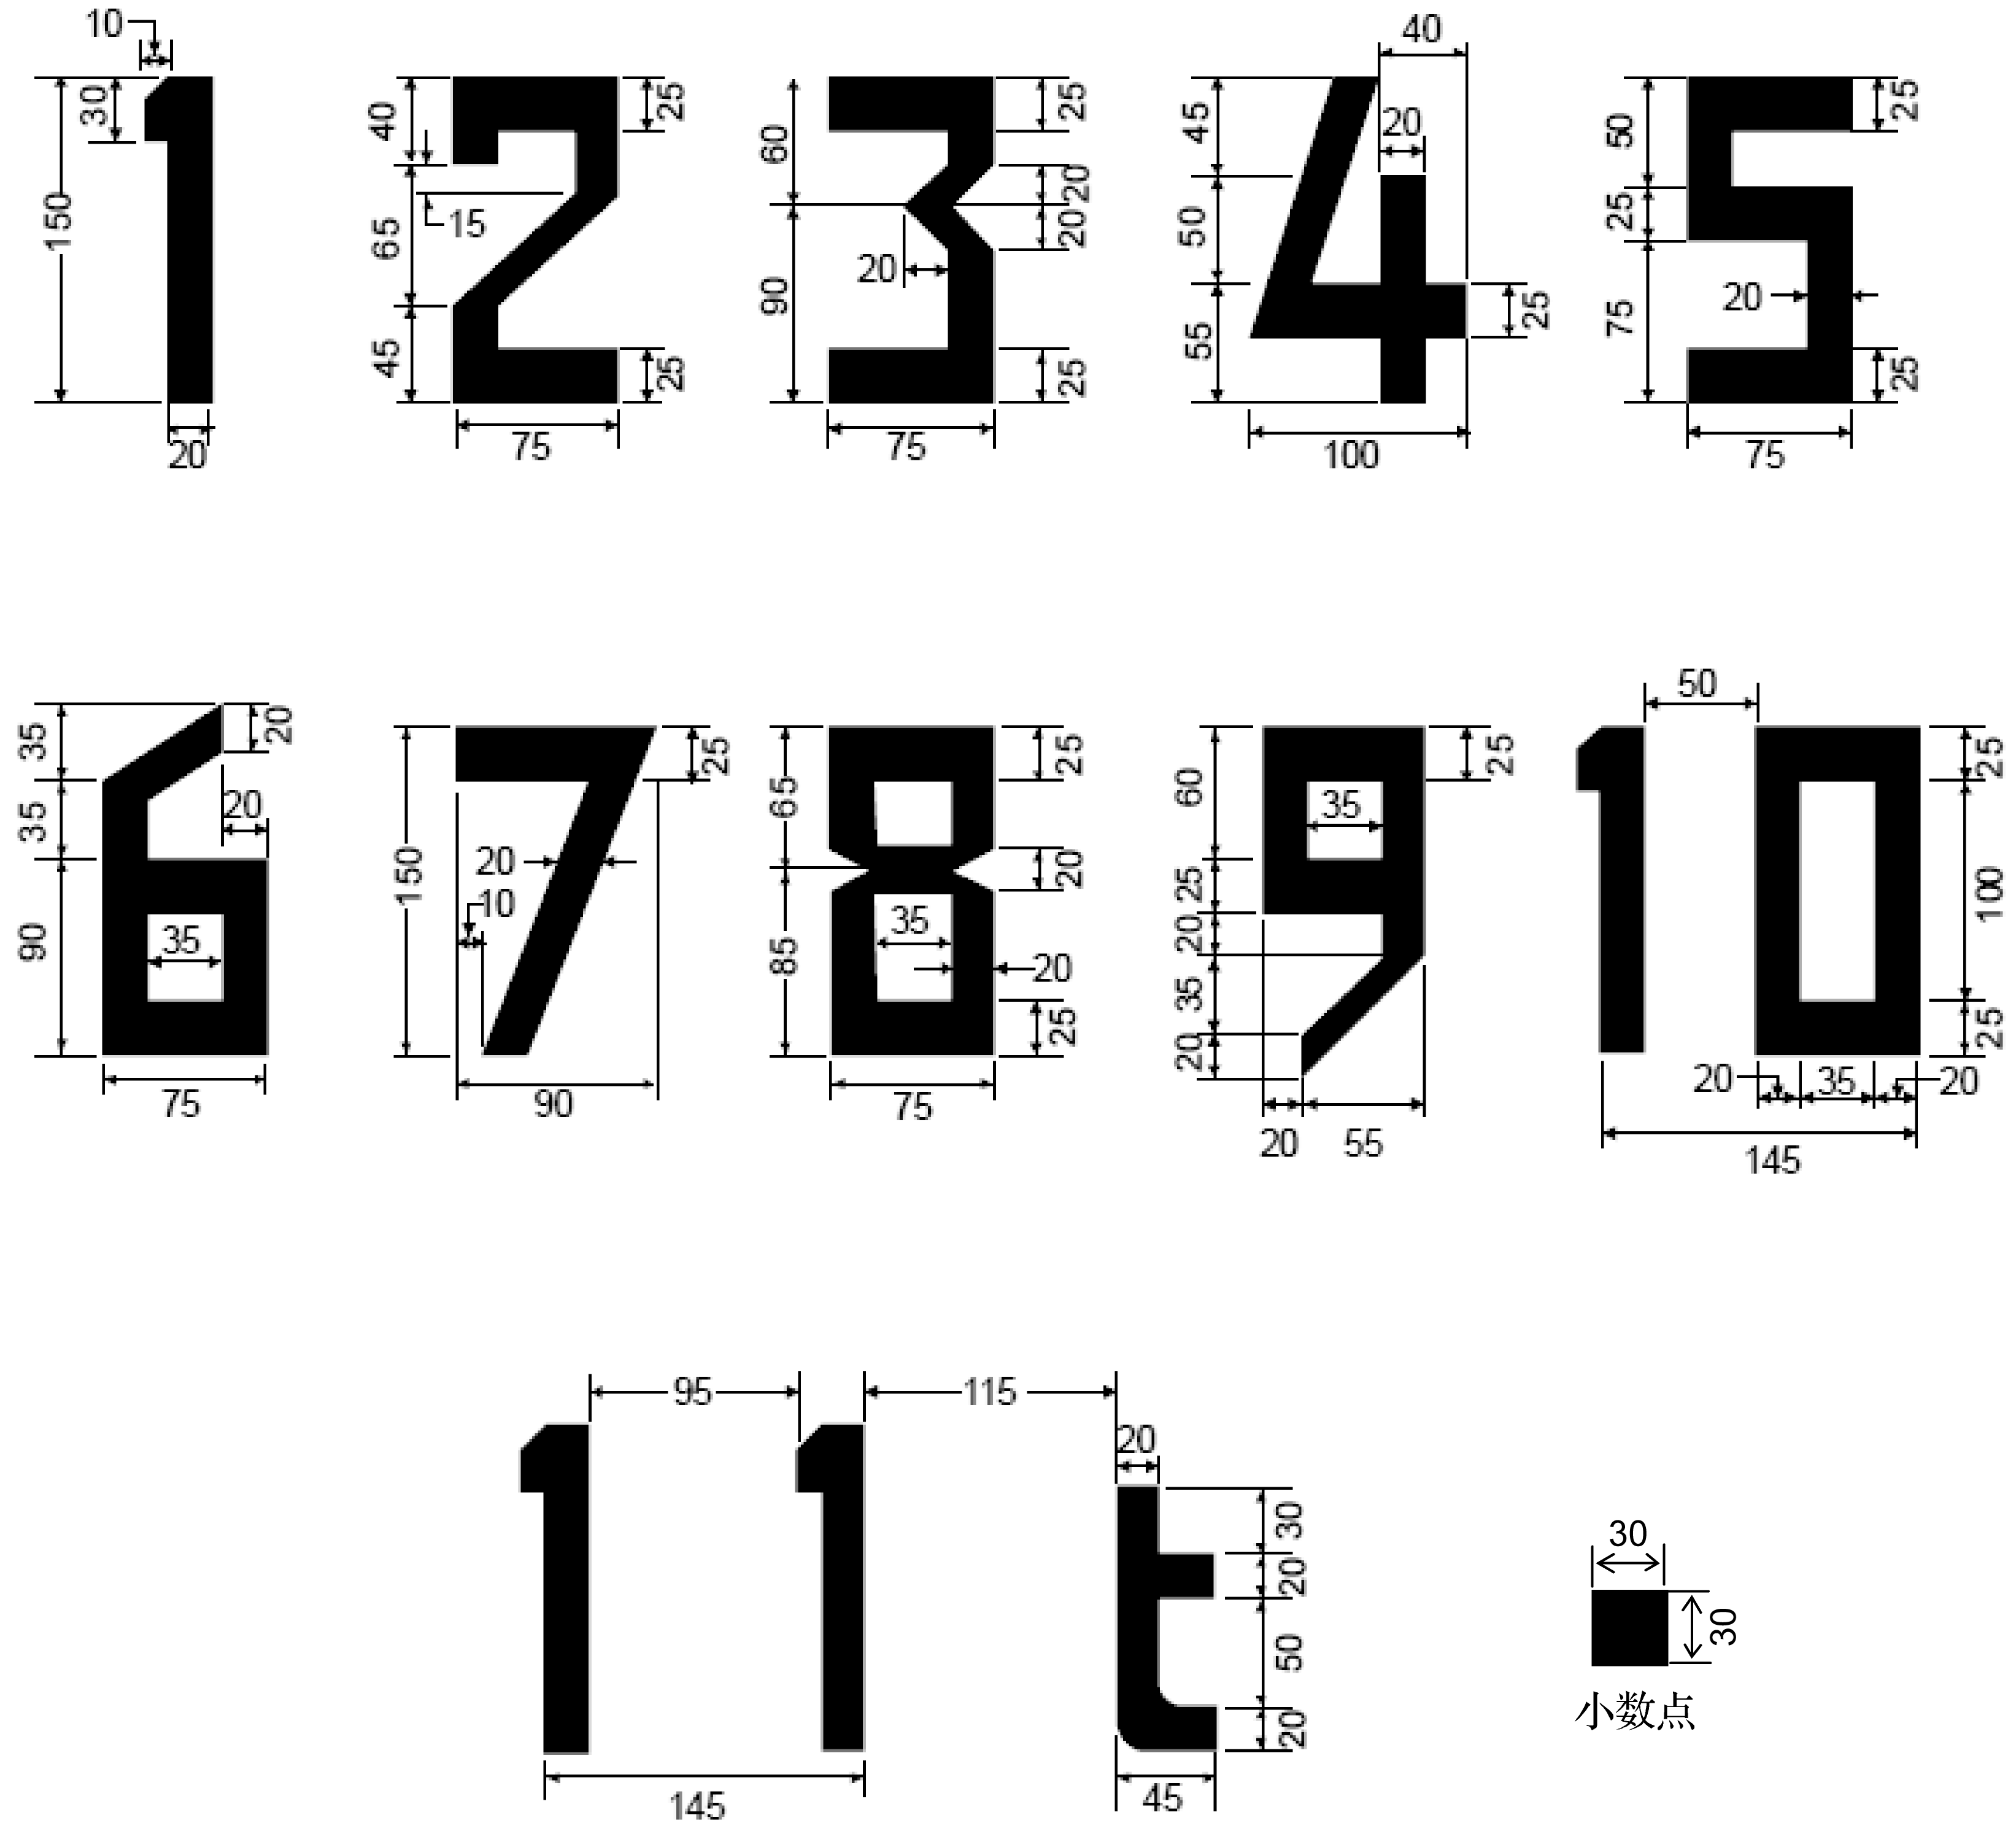 最大允许质量标志上的数字和字母的形状和比例 (单位: cm)